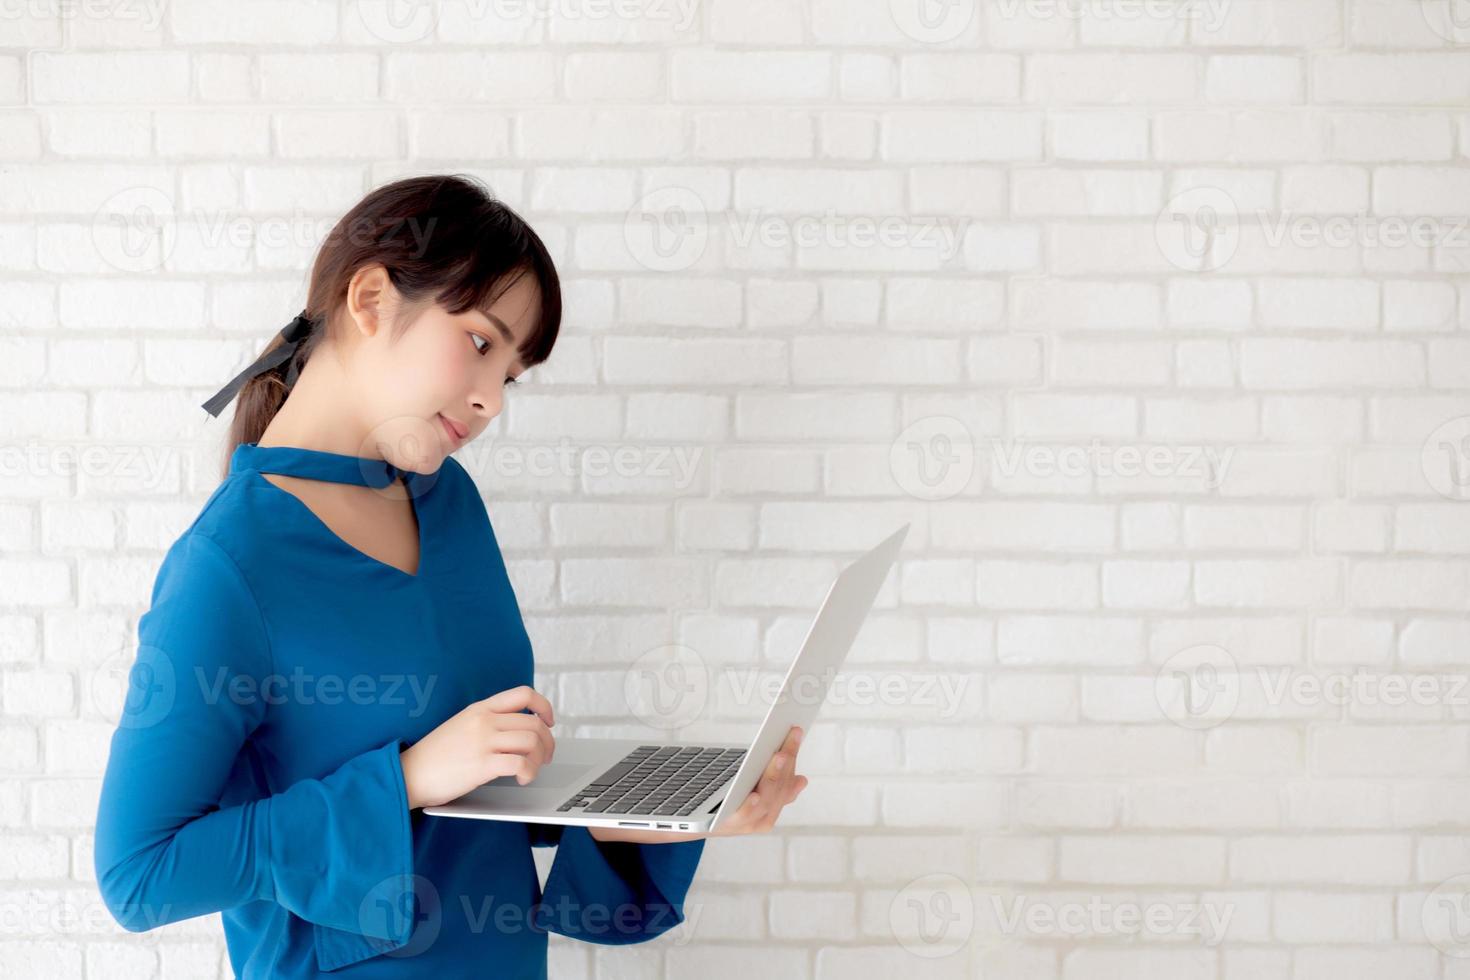 hermoso retrato mujer joven asiática sonríe usando una computadora portátil en el lugar de trabajo sobre fondo de cemento, chica feliz con la computadora en línea, estilo de vida y concepto de negocio independiente. foto